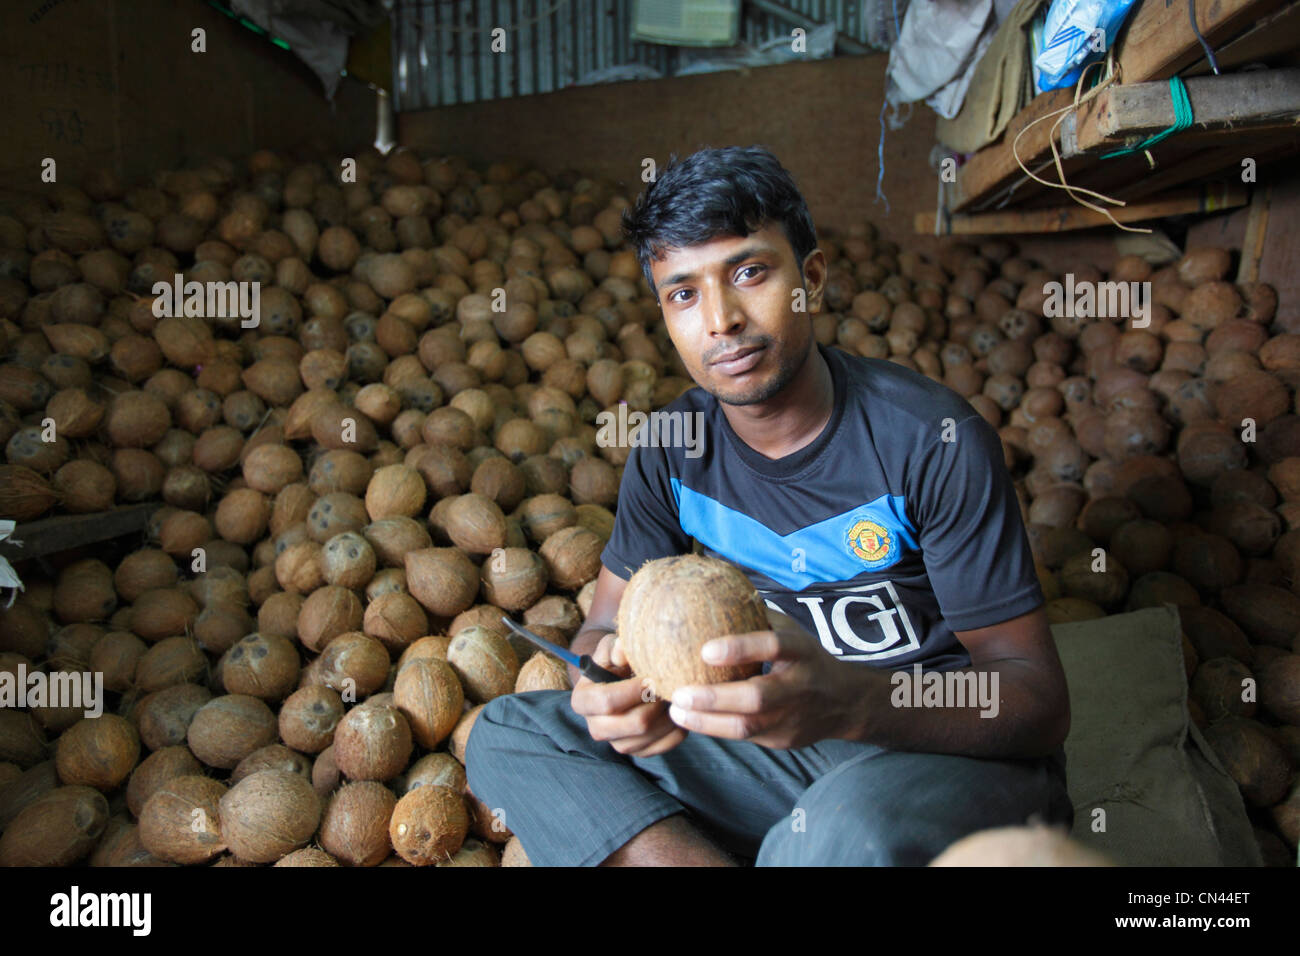 Coco au fruit market, homme, Maldives Banque D'Images